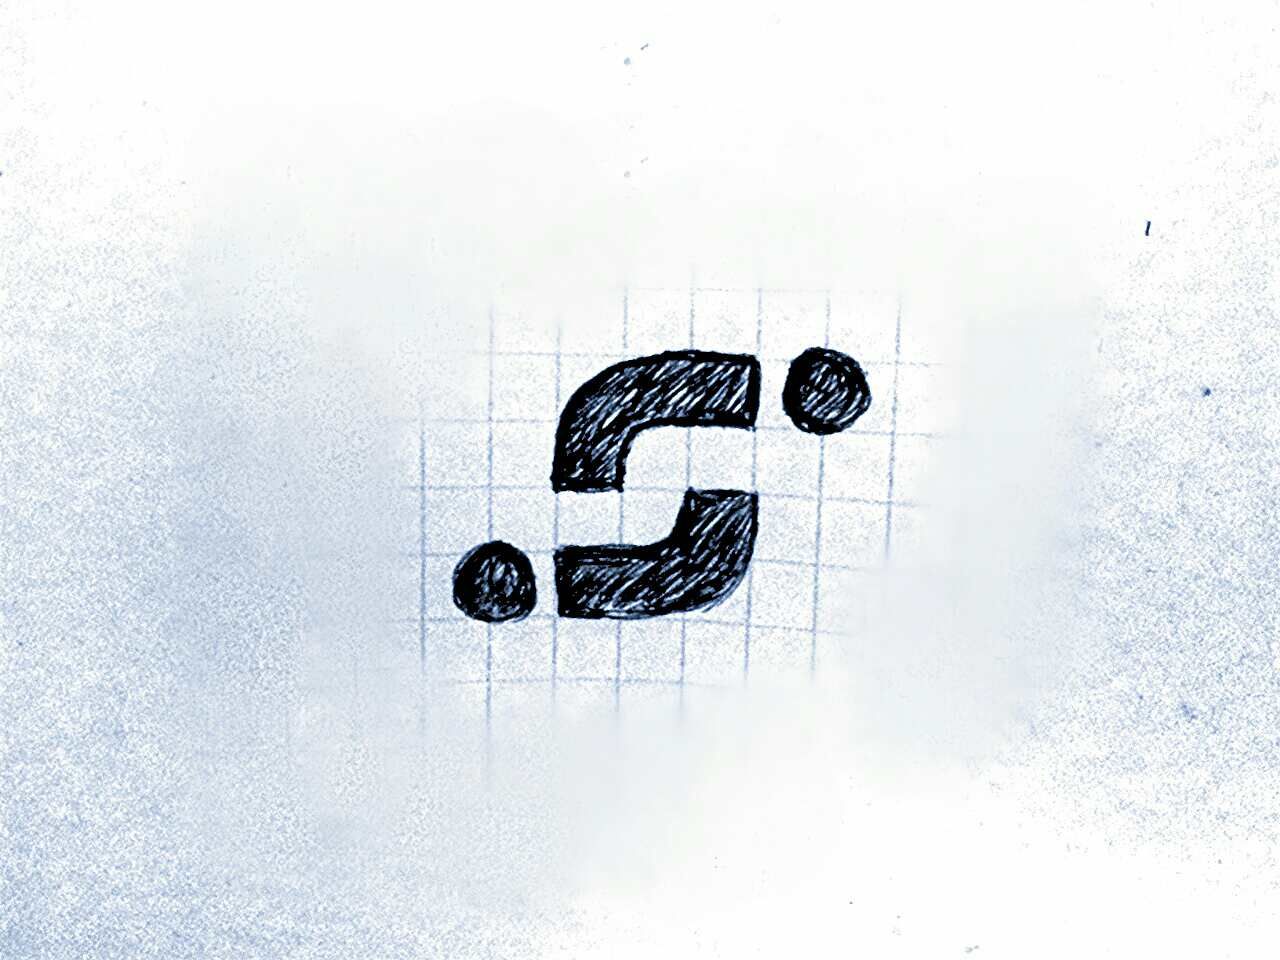 Лого и фирменный стиль для Imperial$port - дизайнер robert3d